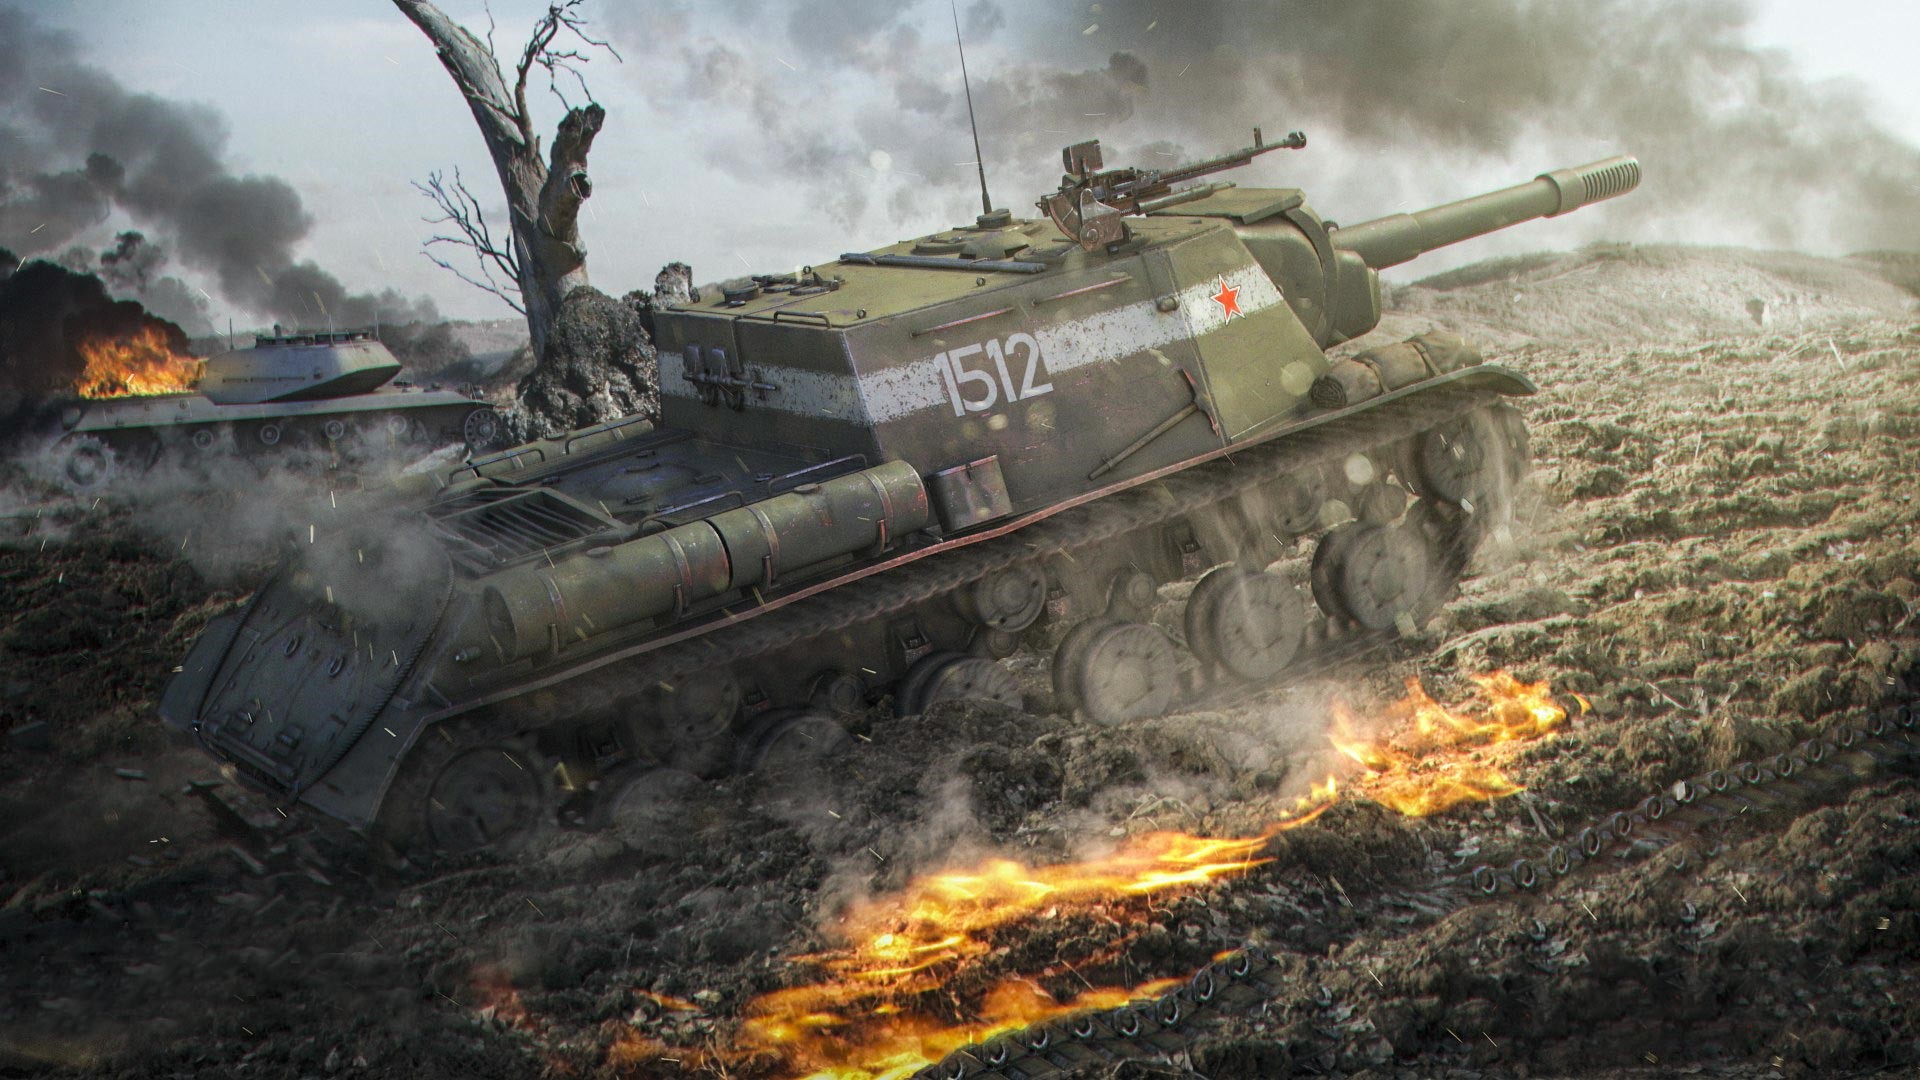 Лу ису. ИСУ-152 World of Tanks. Игра танки World of Tanks ИСУ 152. ИСУ-152 зверобой World of Tanks. ИСУ 152 арт.